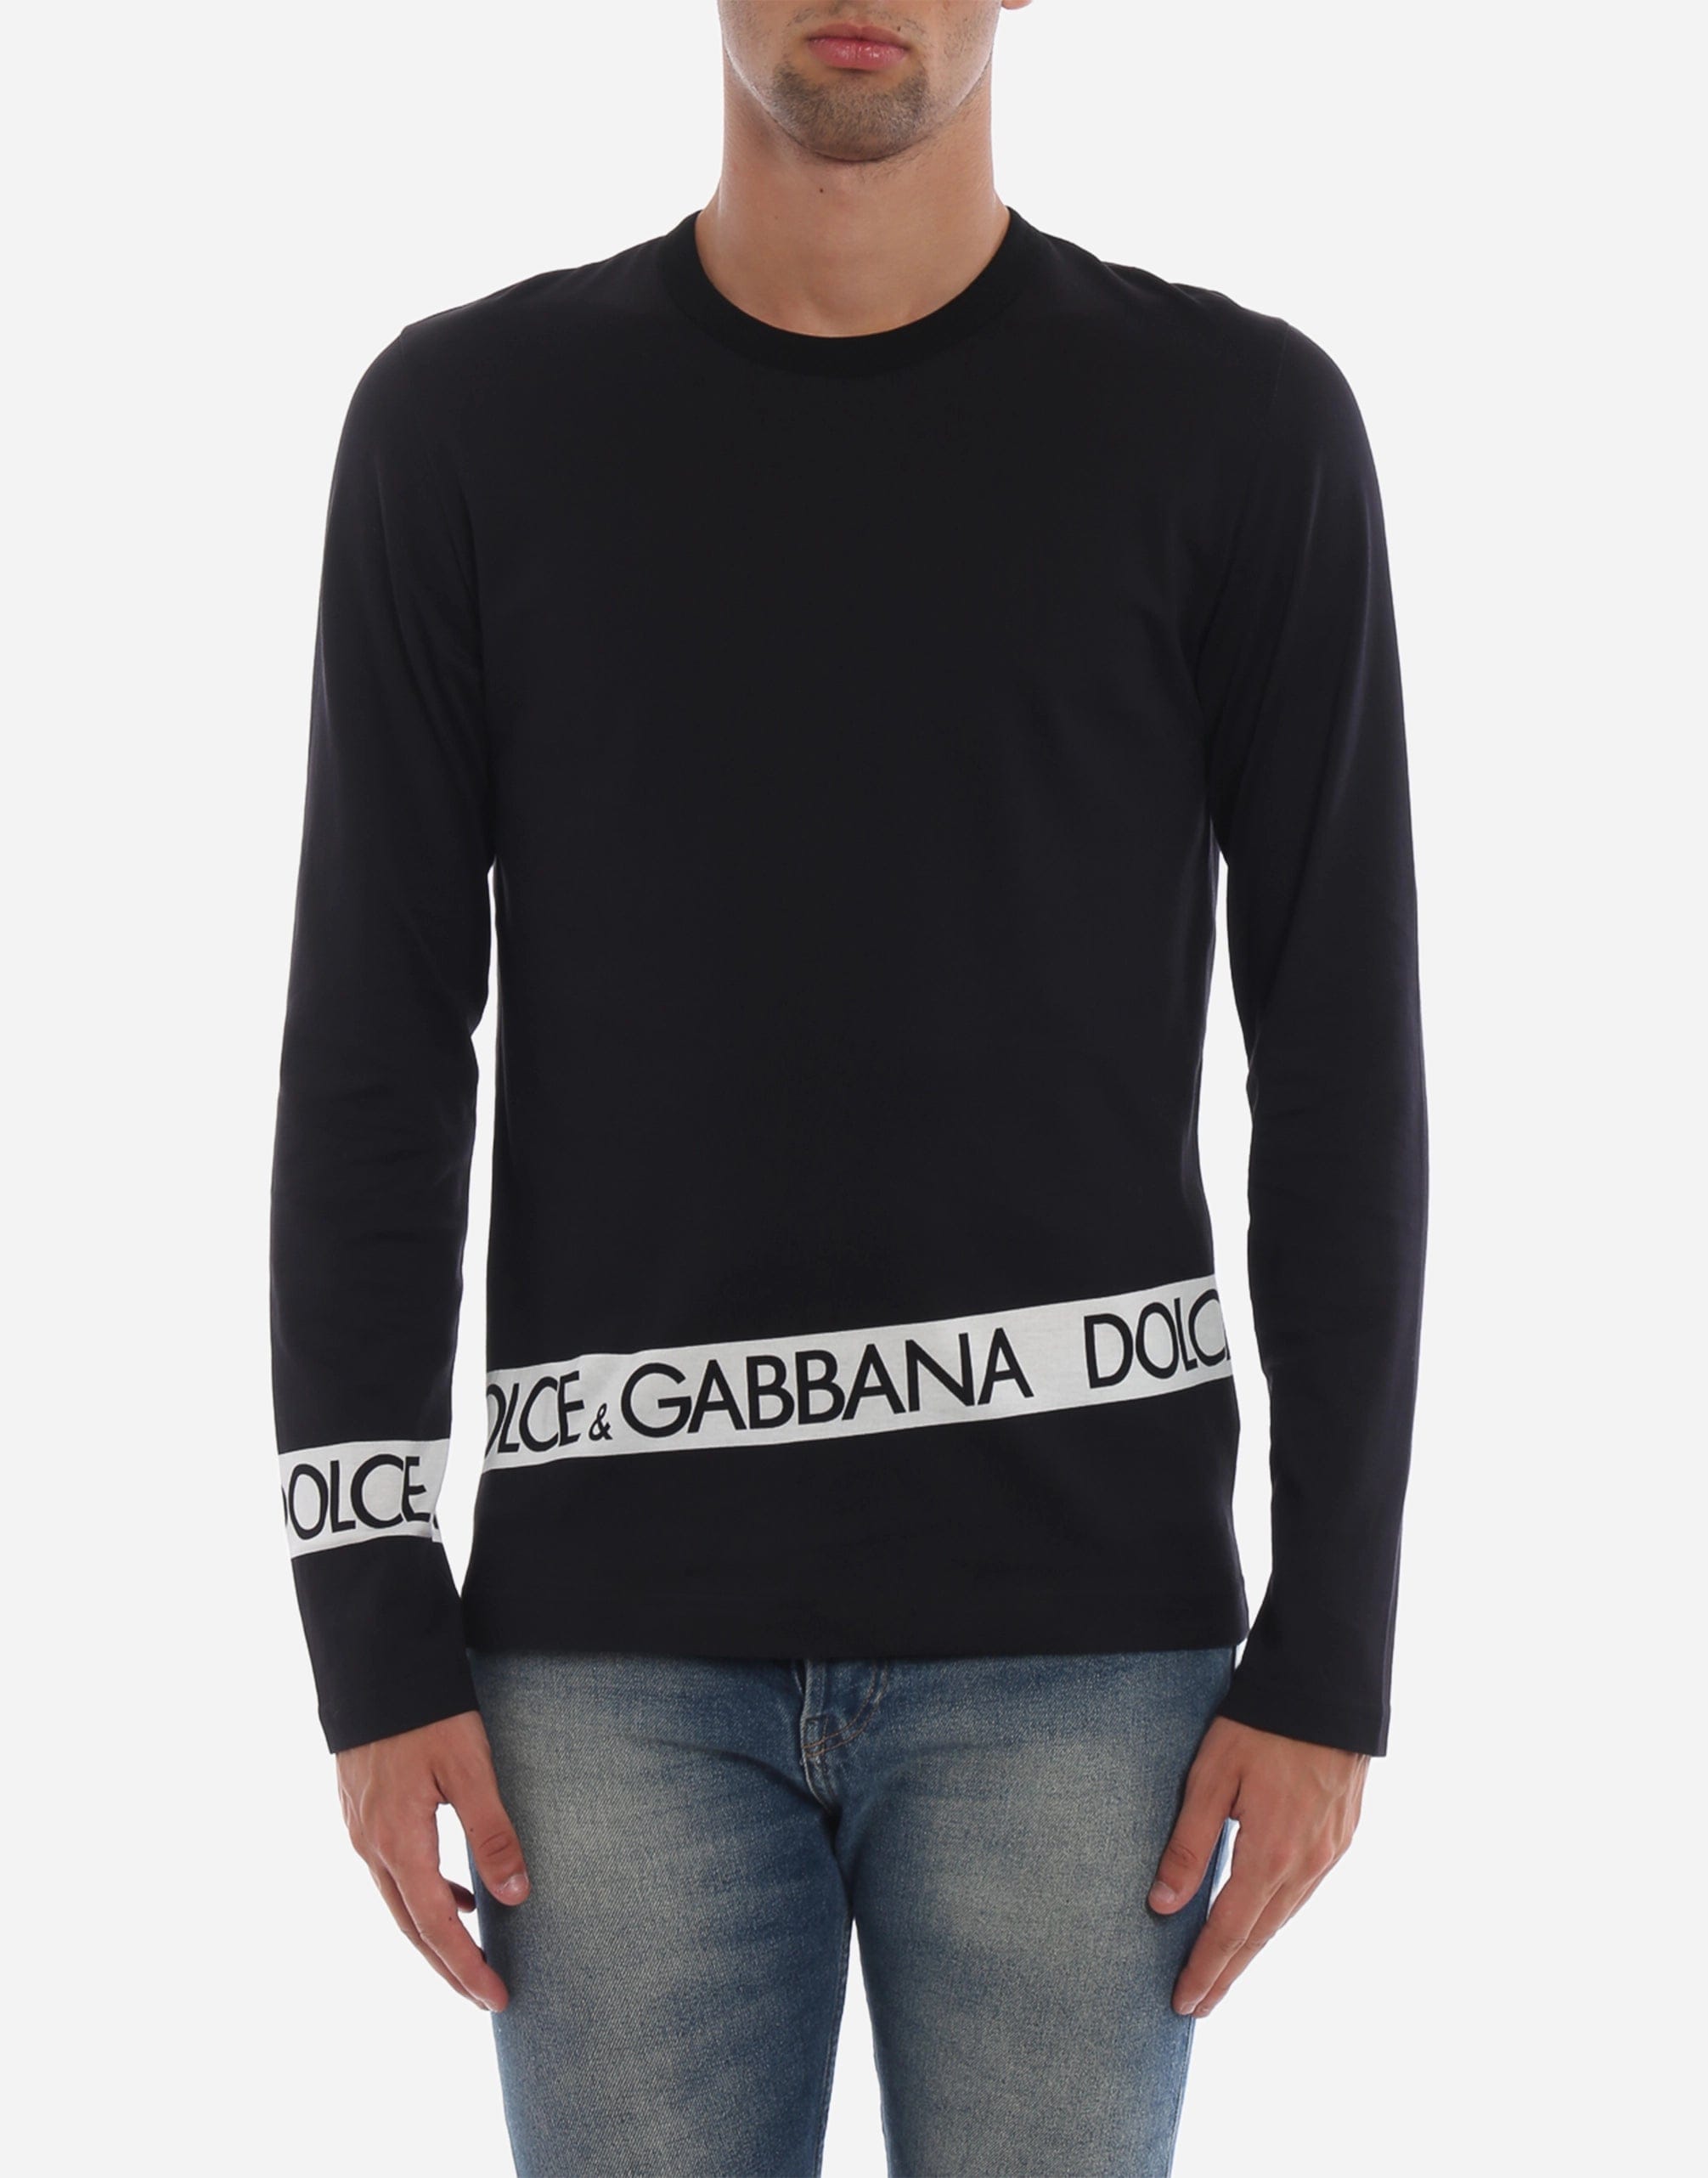 Dolce & Gabbana #DGMILLENNIALS Long Sleeve T-Shirt